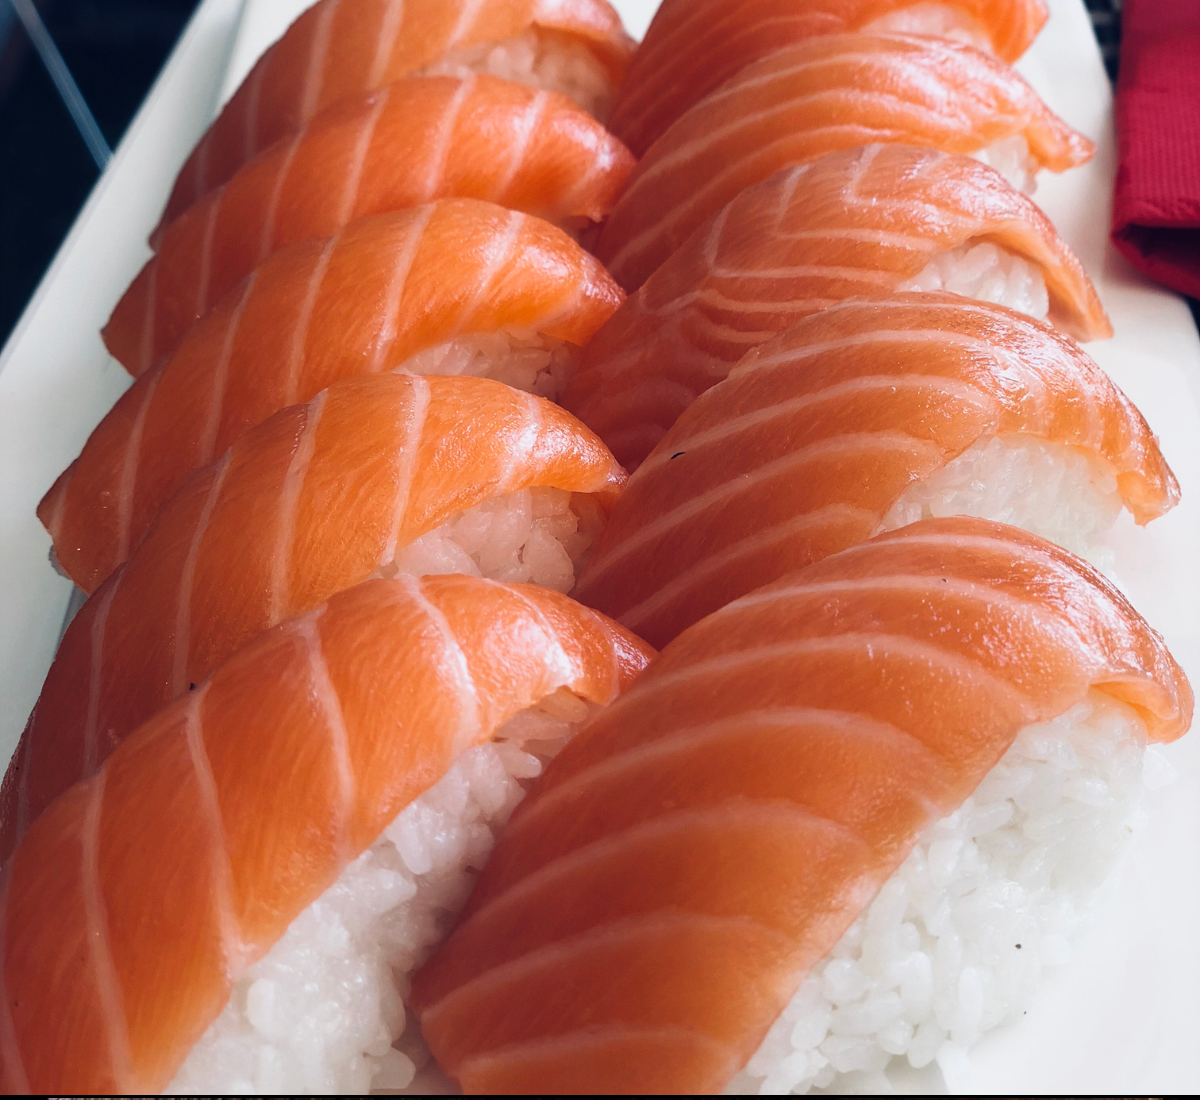 8 tipos de sushi que você deve conhecer e provar O que é sushi? O sushi é um prato japonês feito com arroz marinado em vinagre, acompanhado geralmente por outros alimentos, como salmão, pepino e legumes. Às vezes também contém ovos. Pode ser servido quente ou frio e geralmente é enrolado com algas, como, por exemplo, a famosa alga nori. Sem dúvidas, existem muitas variações desse prato famoso, como os hossomaki (enrolados com alga nori por fora), os uramaki (enrolados com alga nori por dentro) e muitos outros. Melhores tipos de sushi para iniciantes No Brasil, o sushi ganhou uma variedade muito grande, desde opções doces, fritas e até mesmo veganas. No entanto, vale lembrar que essas versões não são tradicionais da cultura japonesa, são criações brasileiras, mas não deixam de ser menos saborosas. Para as pessoas que estão entrando agora no mundo da culinária japonesa, sem dúvidas, umas das primeiras opções indicadas é o hot philadelphia, feito com arroz recheado com cream cheese e salmão. Além disso, uma outra opção muito saborosa e apreciada entre os novatos é o Califórnia, feito com arroz, alga, pepino, manga e saquê, sem o temido peixe cru.  8 principais tipos de sushis Ainda não conhece muita coisa sobre sushis? Pois com esta lista, você vai aprender sobre quais os principais tipos. Então, confira: 1.Gunkan Gunkan é um tipo de sushi feito de pequenos punhados de arroz japonês e cobertos com ingredientes como peixe cru, algas, caviar ou outros ingredientes saborosos. Além disso, é tipicamente servido com shoyu.  Sem dúvidas, a característica mais marcante do Gunkan é seu tamanho em relação aos outros tipos de sushis. Esta versão, geralmente, é menor do que as outras. Aprenda como fazer:
<div class="wp-block-presto-player-reusable-edit"><!--presto-player:video_id=258--><figure class="wp-block-video presto-block-video  presto-provider-youtube" style="--plyr-color-main: var(--presto-player-highlight-color, #ff0000); --presto-player-logo-width: 150px; ">
<presto-player  id="presto-player-17" src="//www.youtube.com/embed/BbXn-TMkDuY?iv_load_policy=3&modestbranding=1&playinline=1&showinfo=0&rel=0&enablejsapi=1" media-title="GUNKAN TRADICIONAL: do Japão direto pro seu prato | Como fazer Sushi" css="" class="presto-video-id-258 presto-preset-id-5 skin-modern" skin="modern" icon-url="https://emagreceja.com.br/wp-content/plugins/presto-player/img/sprite.svg" preload="" poster="" playsinline  ></presto-player>
</figure>        <script>
var player = document.querySelector('presto-player#presto-player-17');
player.video_id = 258;
player.preset = {"id":5,"name":"Youtube Optimized","slug":"youtube","icon":"youtube","skin":"modern","play-large":true,"rewind":true,"play":true,"fast-forward":true,"progress":true,"current-time":true,"mute":true,"volume":true,"speed":true,"pip":false,"fullscreen":true,"captions":false,"reset_on_end":true,"auto_hide":true,"captions_enabled":false,"save_player_position":false,"sticky_scroll":false,"sticky_scroll_position":"bottom right","on_video_end":"select","play_video_viewport":false,"hide_youtube":false,"lazy_load_youtube":true,"hide_logo":false,"border_radius":0,"caption_style":"","caption_background":"","is_locked":true,"cta":[""],"watermark":[""],"search":[""],"email_collection":[""],"created_by":1,"created_at":"2023-01-26 20:03:12","updated_at":"2023-01-26 20:03:12","deleted_at":"","show_time_elapsed":false};
player.chapters = [];
player.overlays = [];
player.tracks = [];
player.branding = {"logo":"","color":"#ff0000","logo_width":150,"player_css":""};
player.blockAttributes = {"id":258,"src":"https:\/\/youtu.be\/BbXn-TMkDuY","preset":5,"video_id":"BbXn-TMkDuY","visibility":"public","color":"#00b3ff","mutedPreview":{"enabled":false,"captions":false},"mutedOverlay":{"enabled":false,"src":"","width":200,"focalPoint":{"x":0.5,"y":0.5}},"mutedOverlayType":"text","mutedOverlayText":"Click to play","mutedOverlayImageWidth":200,"playsInline":true,"chapters":[],"overlays":[],"tracks":[],"title":"GUNKAN TRADICIONAL: do Jap\u00e3o direto pro seu prato | Como fazer Sushi"};
player.skin = "modern";
player.analytics = false;
player.automations = false;
player.provider = "youtube";
player.video_id = 258;
player.provider_video_id = "BbXn-TMkDuY";
player.youtube = {"noCookie":false,"channelId":"","show_count":false};
</script>
</div>
(Autor: Sushi com Tavets) 2.Nigiri Nigiri é um tipo de sushi feito com uma porção de arroz coberta por finos filés de peixe cru crustáceos ou outros ingredientes. Para a confecção do nigiri é usado o famoso WASABI, uma pasta com gosto picante, muito comum na culinária oriental. Em relação aos peixes usados neste prato, os mais comuns são: o salmão, atum, pargo, peixe-galo e linguado. Então, aprenda como fazer:
<div class="wp-block-presto-player-reusable-edit"><!--presto-player:video_id=259--><figure class="wp-block-video presto-block-video  presto-provider-youtube" style="--plyr-color-main: var(--presto-player-highlight-color, #ff0000); --presto-player-logo-width: 150px; ">
<presto-player  id="presto-player-18" src="//www.youtube.com/embed/Cw4Cc0FrFr4?iv_load_policy=3&modestbranding=1&playinline=1&showinfo=0&rel=0&enablejsapi=1" media-title="COMO FAZER NIGIRI DE SALMÃO" css="" class="presto-video-id-259 presto-preset-id-5 skin-modern" skin="modern" icon-url="https://emagreceja.com.br/wp-content/plugins/presto-player/img/sprite.svg" preload="" poster="" playsinline  ></presto-player>
</figure>        <script>
var player = document.querySelector('presto-player#presto-player-18');
player.video_id = 259;
player.preset = {"id":5,"name":"Youtube Optimized","slug":"youtube","icon":"youtube","skin":"modern","play-large":true,"rewind":true,"play":true,"fast-forward":true,"progress":true,"current-time":true,"mute":true,"volume":true,"speed":true,"pip":false,"fullscreen":true,"captions":false,"reset_on_end":true,"auto_hide":true,"captions_enabled":false,"save_player_position":false,"sticky_scroll":false,"sticky_scroll_position":"bottom right","on_video_end":"select","play_video_viewport":false,"hide_youtube":false,"lazy_load_youtube":true,"hide_logo":false,"border_radius":0,"caption_style":"","caption_background":"","is_locked":true,"cta":[""],"watermark":[""],"search":[""],"email_collection":[""],"created_by":1,"created_at":"2023-01-26 20:03:12","updated_at":"2023-01-26 20:03:12","deleted_at":"","show_time_elapsed":false};
player.chapters = [];
player.overlays = [];
player.tracks = [];
player.branding = {"logo":"","color":"#ff0000","logo_width":150,"player_css":""};
player.blockAttributes = {"id":259,"src":"https:\/\/youtu.be\/Cw4Cc0FrFr4","preset":5,"video_id":"Cw4Cc0FrFr4","visibility":"public","color":"#00b3ff","mutedPreview":{"enabled":false,"captions":false},"mutedOverlay":{"enabled":false,"src":"","width":200,"focalPoint":{"x":0.5,"y":0.5}},"mutedOverlayType":"text","mutedOverlayText":"Click to play","mutedOverlayImageWidth":200,"playsInline":true,"chapters":[],"overlays":[],"tracks":[],"title":"COMO FAZER NIGIRI DE SALM\u00c3O"};
player.skin = "modern";
player.analytics = false;
player.automations = false;
player.provider = "youtube";
player.video_id = 259;
player.provider_video_id = "Cw4Cc0FrFr4";
player.youtube = {"noCookie":false,"channelId":"","show_count":false};
</script>
</div>
(Autor: Soul Chef) 3.Hot roll Normalmente, nesta versão, as peças são fritas, diferentemente dos outros tipos de sushis que usam peixes crus na sua composição. O hot roll leva arroz enrolado por alga nori e recheio de cream cheese e frutos do mar. Esta versão foi criada nos Estados Unidos, porém conquistou o coração dos brasileiros, tornando-se um dos prediletos no Brasil. Como fazer:
<div class="wp-block-presto-player-reusable-edit"><!--presto-player:video_id=260--><figure class="wp-block-video presto-block-video  presto-provider-youtube" style="--plyr-color-main: var(--presto-player-highlight-color, #ff0000); --presto-player-logo-width: 150px; ">
<presto-player  id="presto-player-19" src="//www.youtube.com/embed/j4J__AMqxsM?iv_load_policy=3&modestbranding=1&playinline=1&showinfo=0&rel=0&enablejsapi=1" media-title="Como fazer Hot Roll Gastando Pouco (Passo a Passo)" css="" class="presto-video-id-260 presto-preset-id-5 skin-modern" skin="modern" icon-url="https://emagreceja.com.br/wp-content/plugins/presto-player/img/sprite.svg" preload="" poster="" playsinline  ></presto-player>
</figure>        <script>
var player = document.querySelector('presto-player#presto-player-19');
player.video_id = 260;
player.preset = {"id":5,"name":"Youtube Optimized","slug":"youtube","icon":"youtube","skin":"modern","play-large":true,"rewind":true,"play":true,"fast-forward":true,"progress":true,"current-time":true,"mute":true,"volume":true,"speed":true,"pip":false,"fullscreen":true,"captions":false,"reset_on_end":true,"auto_hide":true,"captions_enabled":false,"save_player_position":false,"sticky_scroll":false,"sticky_scroll_position":"bottom right","on_video_end":"select","play_video_viewport":false,"hide_youtube":false,"lazy_load_youtube":true,"hide_logo":false,"border_radius":0,"caption_style":"","caption_background":"","is_locked":true,"cta":[""],"watermark":[""],"search":[""],"email_collection":[""],"created_by":1,"created_at":"2023-01-26 20:03:12","updated_at":"2023-01-26 20:03:12","deleted_at":"","show_time_elapsed":false};
player.chapters = [];
player.overlays = [];
player.tracks = [];
player.branding = {"logo":"","color":"#ff0000","logo_width":150,"player_css":""};
player.blockAttributes = {"id":260,"src":"https:\/\/youtu.be\/j4J__AMqxsM","preset":5,"video_id":"j4J__AMqxsM","visibility":"public","color":"#00b3ff","mutedPreview":{"enabled":false,"captions":false},"mutedOverlay":{"enabled":false,"src":"","width":200,"focalPoint":{"x":0.5,"y":0.5}},"mutedOverlayType":"text","mutedOverlayText":"Click to play","mutedOverlayImageWidth":200,"playsInline":true,"chapters":[],"overlays":[],"tracks":[],"title":"Como fazer Hot Roll Gastando Pouco (Passo a Passo)"};
player.skin = "modern";
player.analytics = false;
player.automations = false;
player.provider = "youtube";
player.video_id = 260;
player.provider_video_id = "j4J__AMqxsM";
player.youtube = {"noCookie":false,"channelId":"","show_count":false};
</script>
</div>
(Autor: EXPERIMENTA) 4.Temaki O temaki é um tipo de sushi, porém sua preparação é diferente. Normalmente,  é feito enrolando arroz e  peixe  dentro de uma folha de alga nori, dando um formato de “cone” ao prato. Além de peixe, outros ingredientes podem ser usados na confecção do temaki, como, por exemplo, frutos do mar, legumes e, até mesmo, frutas.   Como fazer:
<div class="wp-block-presto-player-reusable-edit"><!--presto-player:video_id=261--><figure class="wp-block-video presto-block-video  presto-provider-youtube" style="--plyr-color-main: var(--presto-player-highlight-color, #ff0000); --presto-player-logo-width: 150px; ">
<presto-player  id="presto-player-20" src="//www.youtube.com/embed/5WqPMf6b1-4?iv_load_policy=3&modestbranding=1&playinline=1&showinfo=0&rel=0&enablejsapi=1" media-title="Como fazer temaki de salmão" css="" class="presto-video-id-261 presto-preset-id-5 skin-modern" skin="modern" icon-url="https://emagreceja.com.br/wp-content/plugins/presto-player/img/sprite.svg" preload="" poster="" playsinline  ></presto-player>
</figure>        <script>
var player = document.querySelector('presto-player#presto-player-20');
player.video_id = 261;
player.preset = {"id":5,"name":"Youtube Optimized","slug":"youtube","icon":"youtube","skin":"modern","play-large":true,"rewind":true,"play":true,"fast-forward":true,"progress":true,"current-time":true,"mute":true,"volume":true,"speed":true,"pip":false,"fullscreen":true,"captions":false,"reset_on_end":true,"auto_hide":true,"captions_enabled":false,"save_player_position":false,"sticky_scroll":false,"sticky_scroll_position":"bottom right","on_video_end":"select","play_video_viewport":false,"hide_youtube":false,"lazy_load_youtube":true,"hide_logo":false,"border_radius":0,"caption_style":"","caption_background":"","is_locked":true,"cta":[""],"watermark":[""],"search":[""],"email_collection":[""],"created_by":1,"created_at":"2023-01-26 20:03:12","updated_at":"2023-01-26 20:03:12","deleted_at":"","show_time_elapsed":false};
player.chapters = [];
player.overlays = [];
player.tracks = [];
player.branding = {"logo":"","color":"#ff0000","logo_width":150,"player_css":""};
player.blockAttributes = {"id":261,"src":"https:\/\/youtu.be\/5WqPMf6b1-4","preset":5,"video_id":"5WqPMf6b1-4","visibility":"public","color":"#00b3ff","mutedPreview":{"enabled":false,"captions":false},"mutedOverlay":{"enabled":false,"src":"","width":200,"focalPoint":{"x":0.5,"y":0.5}},"mutedOverlayType":"text","mutedOverlayText":"Click to play","mutedOverlayImageWidth":200,"playsInline":true,"chapters":[],"overlays":[],"tracks":[],"title":"Como fazer temaki de salm\u00e3o"};
player.skin = "modern";
player.analytics = false;
player.automations = false;
player.provider = "youtube";
player.video_id = 261;
player.provider_video_id = "5WqPMf6b1-4";
player.youtube = {"noCookie":false,"channelId":"","show_count":false};
</script>
</div>
(Autor: sushibilidade) 5.Joe Esta versão, também, é conhecida como Jow, Djô e Djow. É um tipo de sushi enrolado com uma tira de peixe cru, diferente dos outros sushis que são enrolados com alga e arroz. Sem dúvidas, é um dos poucos tipos de sushi que não levam alga em sua composição. Normalmente, é coberto por pedaços ou, até mesmo, ovas de peixe, além de temperos. Como fazer:
<div class="wp-block-presto-player-reusable-edit"><!--presto-player:video_id=262--><figure class="wp-block-video presto-block-video  presto-provider-youtube" style="--plyr-color-main: var(--presto-player-highlight-color, #ff0000); --presto-player-logo-width: 150px; ">
<presto-player  id="presto-player-21" src="//www.youtube.com/embed/2COcAWkV7P0?iv_load_policy=3&modestbranding=1&playinline=1&showinfo=0&rel=0&enablejsapi=1" media-title="JOE DE SALMÃO | Como Fazer Sushi | Com a Fê" css="" class="presto-video-id-262 presto-preset-id-5 skin-modern" skin="modern" icon-url="https://emagreceja.com.br/wp-content/plugins/presto-player/img/sprite.svg" preload="" poster="" playsinline  ></presto-player>
</figure>        <script>
var player = document.querySelector('presto-player#presto-player-21');
player.video_id = 262;
player.preset = {"id":5,"name":"Youtube Optimized","slug":"youtube","icon":"youtube","skin":"modern","play-large":true,"rewind":true,"play":true,"fast-forward":true,"progress":true,"current-time":true,"mute":true,"volume":true,"speed":true,"pip":false,"fullscreen":true,"captions":false,"reset_on_end":true,"auto_hide":true,"captions_enabled":false,"save_player_position":false,"sticky_scroll":false,"sticky_scroll_position":"bottom right","on_video_end":"select","play_video_viewport":false,"hide_youtube":false,"lazy_load_youtube":true,"hide_logo":false,"border_radius":0,"caption_style":"","caption_background":"","is_locked":true,"cta":[""],"watermark":[""],"search":[""],"email_collection":[""],"created_by":1,"created_at":"2023-01-26 20:03:12","updated_at":"2023-01-26 20:03:12","deleted_at":"","show_time_elapsed":false};
player.chapters = [];
player.overlays = [];
player.tracks = [];
player.branding = {"logo":"","color":"#ff0000","logo_width":150,"player_css":""};
player.blockAttributes = {"id":262,"src":"https:\/\/youtu.be\/2COcAWkV7P0","preset":5,"video_id":"2COcAWkV7P0","visibility":"public","color":"#00b3ff","mutedPreview":{"enabled":false,"captions":false},"mutedOverlay":{"enabled":false,"src":"","width":200,"focalPoint":{"x":0.5,"y":0.5}},"mutedOverlayType":"text","mutedOverlayText":"Click to play","mutedOverlayImageWidth":200,"playsInline":true,"chapters":[],"overlays":[],"tracks":[],"title":"JOE DE SALM\u00c3O | Como Fazer Sushi | Com a F\u00ea"};
player.skin = "modern";
player.analytics = false;
player.automations = false;
player.provider = "youtube";
player.video_id = 262;
player.provider_video_id = "2COcAWkV7P0";
player.youtube = {"noCookie":false,"channelId":"","show_count":false};
</script>
</div>
(Autor: Sushi com a Fê) 6.Hossomaki Tekkamaki O tekkamaki é muito semelhante ao sushis tradicionais, pois é composto de arroz envolto em alga nori. No entanto, o seu diferencial está no seu recheio, que é composto unicamente de atum. No Brasil, este sushi ganhou muitas variações de recheio, desde outros tipos de peixe, até mesmo, frutas e vegetais. Como fazer:
<div class="wp-block-presto-player-reusable-edit"><!--presto-player:video_id=265--><figure class="wp-block-video presto-block-video  presto-provider-youtube" style="--plyr-color-main: var(--presto-player-highlight-color, #ff0000); --presto-player-logo-width: 150px; ">
<presto-player  id="presto-player-22" src="//www.youtube.com/embed/xT4iF1wwTAo?iv_load_policy=3&modestbranding=1&playinline=1&showinfo=0&rel=0&enablejsapi=1" media-title="Como Fazer Sushi de Atum, Tekka." css="" class="presto-video-id-265 presto-preset-id-3 skin-modern" skin="modern" icon-url="https://emagreceja.com.br/wp-content/plugins/presto-player/img/sprite.svg" preload="" poster="" playsinline  >
<div class="presto-iframe-fallback-container">
<iframe style="width: 100%" title="Youtube Video" class="presto-fallback-iframe" id="presto-iframe-fallback-22" data-src="https://www.youtube.com/embed/xT4iF1wwTAo?iv_load_policy=3&modestbranding=1&playsinline=1&showinfo=0&rel=0&enablejsapi=1" allowfullscreen allowtransparency allow="autoplay"></iframe>
</div></presto-player>
</figure>        <script>
var player = document.querySelector('presto-player#presto-player-22');
player.video_id = 265;
player.preset = {"id":3,"name":"Simple","slug":"simple","icon":"video-alt3","skin":"modern","play-large":true,"rewind":false,"play":true,"fast-forward":false,"progress":true,"current-time":false,"mute":false,"volume":false,"speed":false,"pip":false,"fullscreen":true,"captions":false,"reset_on_end":true,"auto_hide":true,"captions_enabled":false,"save_player_position":false,"sticky_scroll":false,"sticky_scroll_position":"bottom right","on_video_end":"select","play_video_viewport":false,"hide_youtube":true,"lazy_load_youtube":false,"hide_logo":false,"border_radius":0,"caption_style":"","caption_background":"","is_locked":true,"cta":[""],"watermark":[""],"search":[""],"email_collection":[""],"action_bar":[""],"created_by":1,"created_at":"2023-01-26 20:03:12","updated_at":"2023-01-26 20:03:12","deleted_at":"","show_time_elapsed":false};
player.chapters = [];
player.overlays = [];
player.tracks = [];
player.branding = {"logo":"","color":"#ff0000","logo_width":150,"player_css":""};
player.blockAttributes = {"id":265,"src":"https:\/\/youtu.be\/xT4iF1wwTAo","preset":3,"video_id":"xT4iF1wwTAo","visibility":"public","color":"#00b3ff","mutedPreview":{"enabled":false,"captions":false},"mutedOverlay":{"enabled":false,"src":"","width":200,"focalPoint":{"x":0.5,"y":0.5}},"mutedOverlayType":"text","mutedOverlayText":"Click to play","mutedOverlayImageWidth":200,"playsInline":true,"chapters":[],"overlays":[],"tracks":[],"title":"Como Fazer Sushi de Atum, Tekka."};
player.skin = "modern";
player.analytics = false;
player.automations = false;
player.provider = "youtube";
player.video_id = 265;
player.provider_video_id = "xT4iF1wwTAo";
player.youtube = {"noCookie":false,"channelId":"","show_count":false};
</script>
</div>
(Autor: Sane Zushi - Restaurante Sanefuji) 7.Hossomaki Kappamaki O Hossomaki Kappamaki é um dos principais tipos de sushi. Ele se diferencia, pois leva pepino como recheio, diferentemente do tekkamaki que usa atum como seu recheio principal. É composto de arroz, pepino e folha de alga nori (sua preparação é semelhante ao tekkamaki). Sem dúvidas, é uma ótima opção para pessoas que não comem carne, como, por exemplo, veganos e vegetarianos. Como fazer:
<div class="wp-block-presto-player-reusable-edit"><!--presto-player:video_id=263--><figure class="wp-block-video presto-block-video  presto-provider-youtube" style="--plyr-color-main: var(--presto-player-highlight-color, #ff0000); --presto-player-logo-width: 150px; ">
<presto-player  id="presto-player-23" src="//www.youtube.com/embed/KF-T9LYGWxw?iv_load_policy=3&modestbranding=1&playinline=1&showinfo=0&rel=0&enablejsapi=1" media-title="KAPPA MAKI: O tradicional hossomaki de pepino | Como fazer Sushi" css="" class="presto-video-id-263 presto-preset-id-5 skin-modern" skin="modern" icon-url="https://emagreceja.com.br/wp-content/plugins/presto-player/img/sprite.svg" preload="" poster="" playsinline  ></presto-player>
</figure>        <script>
var player = document.querySelector('presto-player#presto-player-23');
player.video_id = 263;
player.preset = {"id":5,"name":"Youtube Optimized","slug":"youtube","icon":"youtube","skin":"modern","play-large":true,"rewind":true,"play":true,"fast-forward":true,"progress":true,"current-time":true,"mute":true,"volume":true,"speed":true,"pip":false,"fullscreen":true,"captions":false,"reset_on_end":true,"auto_hide":true,"captions_enabled":false,"save_player_position":false,"sticky_scroll":false,"sticky_scroll_position":"bottom right","on_video_end":"select","play_video_viewport":false,"hide_youtube":false,"lazy_load_youtube":true,"hide_logo":false,"border_radius":0,"caption_style":"","caption_background":"","is_locked":true,"cta":[""],"watermark":[""],"search":[""],"email_collection":[""],"created_by":1,"created_at":"2023-01-26 20:03:12","updated_at":"2023-01-26 20:03:12","deleted_at":"","show_time_elapsed":false};
player.chapters = [];
player.overlays = [];
player.tracks = [];
player.branding = {"logo":"","color":"#ff0000","logo_width":150,"player_css":""};
player.blockAttributes = {"id":263,"src":"https:\/\/youtu.be\/KF-T9LYGWxw","preset":5,"video_id":"KF-T9LYGWxw","visibility":"public","color":"#00b3ff","mutedPreview":{"enabled":false,"captions":false},"mutedOverlay":{"enabled":false,"src":"","width":200,"focalPoint":{"x":0.5,"y":0.5}},"mutedOverlayType":"text","mutedOverlayText":"Click to play","mutedOverlayImageWidth":200,"playsInline":true,"chapters":[],"overlays":[],"tracks":[],"title":"KAPPA MAKI: O tradicional hossomaki de pepino | Como fazer Sushi"};
player.skin = "modern";
player.analytics = false;
player.automations = false;
player.provider = "youtube";
player.video_id = 263;
player.provider_video_id = "KF-T9LYGWxw";
player.youtube = {"noCookie":false,"channelId":"","show_count":false};
</script>
</div>
(Autor: Sushi com Tavets) 8.Uramaki O Uramaki é um tipo de sushi que consiste num enrolado invertido com arroz por fora e alga por dentro, envolvendo o recheio.  Normalmente, as pessoas o chamam de “ sushi inverso”, devido a essa característica. Este sushi é normalmente feito com recheios de salmão, abacate, pepino, manga e outros tipos de ingredientes. Como fazer:
<div class="wp-block-presto-player-reusable-edit"><!--presto-player:video_id=266--><figure class="wp-block-video presto-block-video  presto-provider-youtube" style="--plyr-color-main: var(--presto-player-highlight-color, #ff0000); --presto-player-logo-width: 150px; ">
<presto-player  id="presto-player-24" src="//www.youtube.com/embed/Skf9YXPG1pY?iv_load_policy=3&modestbranding=1&playinline=1&showinfo=0&rel=0&enablejsapi=1" media-title="COMO FAZER URAMAKI FILADÉLFIA" css="" class="presto-video-id-266 presto-preset-id-5 skin-modern" skin="modern" icon-url="https://emagreceja.com.br/wp-content/plugins/presto-player/img/sprite.svg" preload="" poster="" playsinline  ></presto-player>
</figure>        <script>
var player = document.querySelector('presto-player#presto-player-24');
player.video_id = 266;
player.preset = {"id":5,"name":"Youtube Optimized","slug":"youtube","icon":"youtube","skin":"modern","play-large":true,"rewind":true,"play":true,"fast-forward":true,"progress":true,"current-time":true,"mute":true,"volume":true,"speed":true,"pip":false,"fullscreen":true,"captions":false,"reset_on_end":true,"auto_hide":true,"captions_enabled":false,"save_player_position":false,"sticky_scroll":false,"sticky_scroll_position":"bottom right","on_video_end":"select","play_video_viewport":false,"hide_youtube":false,"lazy_load_youtube":true,"hide_logo":false,"border_radius":0,"caption_style":"","caption_background":"","is_locked":true,"cta":[""],"watermark":[""],"search":[""],"email_collection":[""],"created_by":1,"created_at":"2023-01-26 20:03:12","updated_at":"2023-01-26 20:03:12","deleted_at":"","show_time_elapsed":false};
player.chapters = [];
player.overlays = [];
player.tracks = [];
player.branding = {"logo":"","color":"#ff0000","logo_width":150,"player_css":""};
player.blockAttributes = {"id":266,"src":"https:\/\/youtu.be\/Skf9YXPG1pY","preset":5,"video_id":"Skf9YXPG1pY","visibility":"public","color":"#00b3ff","mutedPreview":{"enabled":false,"captions":false},"mutedOverlay":{"enabled":false,"src":"","width":200,"focalPoint":{"x":0.5,"y":0.5}},"mutedOverlayType":"text","mutedOverlayText":"Click to play","mutedOverlayImageWidth":200,"playsInline":true,"chapters":[],"overlays":[],"tracks":[],"title":"COMO FAZER URAMAKI FILAD\u00c9LFIA"};
player.skin = "modern";
player.analytics = false;
player.automations = false;
player.provider = "youtube";
player.video_id = 266;
player.provider_video_id = "Skf9YXPG1pY";
player.youtube = {"noCookie":false,"channelId":"","show_count":false};
</script>
</div>
(Autor: Soul Chefs) Diferenças entre sushi e sashimi O sushi consiste em peixe cru enrolado com arroz e alga, enquanto o sashimi é apenas o peixe cru cortado em fatias finas. Ambos são alimentos japoneses populares, mas a diferença é que um tem arroz e o outro não.  Benefícios do sushi para a saúde O sushi é uma refeição saudável pouco calórica que contém muitos nutrientes importantes. Ele pode ajudar na redução dos níveis de colesterol, melhorando assim sua saúde cardiovascular geral. O sushi também tem grandes quantidades de ômega-3, um nutriente essencial para um coração saudável. Além disso, o sushi é rico em proteínas e ferro, o que pode ajudar no aumento da produção de glóbulos vermelhos e na prevenção da anemia.  No entanto, vale lembrar, que para aproveitar os benefícios do sushi, deve-se consumi-lo com moderação e evitar as versões fritas. Arroz para sushi WP Recipe Maker #4240 remove 8 tipos de sushi que você deve conhecer e provar Prove novos sabores e descubra 8 tipos de sushi que certamente não conhecia! Com esta lista, vai poder experimentar todas as variedades desta incrível iguaria japonesa. - 2 xícaras de arroz japonês - 3 xícaras de água - 120 ml de vinagre de arroz - 3 colheres de sobremesa de açúcar branco - 1 colher de café de sal 1) Primeiramente, coloque o arroz de molho por mais ou menos 40 minutinhos. Em seguida, lave bem até a água ficar cristalina, sem aquele aspecto turvo. 2) Coloque o arroz em uma panela e em fogo médio com tampa até secar e ficar mais "inchadinho". 3) Junte o vinagre, o sal e o açúcar. Mexa bem, até todos dissolverem bem. 4) Em uma recipiente grande, adicione o arroz ainda quente e bem devagar vá acrescentando a mistura de vinagre. Mexa bem e com movimentos rápidos. Deixe esfriar. Prove novos sabores e descubra 8 tipos de sushi que certamente não conhecia! Com esta lista, vai poder experimentar todas as variedades desta incrível iguaria japonesa. O que é sushi? O sushi é um prato japonês feito com arroz marinado em vinagre, acompanhado geralmente por outros alimentos, como salmão, pepino e legumes. Às vezes também contém ovos. Pode ser servido quente ou frio e geralmente é enrolado com algas, como, por exemplo, a famosa alga nori. Sem dúvidas, existem muitas variações desse prato famoso, como os hossomaki (enrolados com alga nori por fora), os uramaki (enrolados com alga nori por dentro) e muitos outros. Melhores tipos de sushi para iniciantes No Brasil, o sushi ganhou uma variedade muito grande, desde opções doces, fritas e até mesmo veganas. No entanto, vale lembrar que essas versões não são tradicionais da cultura japonesa, são criações brasileiras, mas não deixam de ser menos saborosas. Para as pessoas que estão entrando agora no mundo da culinária japonesa, sem dúvidas, umas das primeiras opções indicadas é o hot philadelphia, feito com arroz recheado com cream cheese e salmão. Além disso, uma outra opção muito saborosa e apreciada entre os novatos é o Califórnia, feito com arroz, alga, pepino, manga e saquê, sem o temido peixe cru.  8 principais tipos de sushis Ainda não conhece muita coisa sobre sushis? Pois com esta lista, você vai aprender sobre quais os principais tipos. Então, confira: 1.Gunkan Gunkan é um tipo de sushi feito de pequenos punhados de arroz japonês e cobertos com ingredientes como peixe cru, algas, caviar ou outros ingredientes saborosos. Além disso, é tipicamente servido com shoyu.  Sem dúvidas, a característica mais marcante do Gunkan é seu tamanho em relação aos outros tipos de sushis. Esta versão, geralmente, é menor do que as outras. Aprenda como fazer:
<div class="wp-block-presto-player-reusable-edit"><!--presto-player:video_id=258--><figure class="wp-block-video presto-block-video  presto-provider-youtube" style="--plyr-color-main: var(--presto-player-highlight-color, #ff0000); --presto-player-logo-width: 150px; ">
<presto-player  id="presto-player-25" src="//www.youtube.com/embed/BbXn-TMkDuY?iv_load_policy=3&modestbranding=1&playinline=1&showinfo=0&rel=0&enablejsapi=1" media-title="GUNKAN TRADICIONAL: do Japão direto pro seu prato | Como fazer Sushi" css="" class="presto-video-id-258 presto-preset-id-5 skin-modern" skin="modern" icon-url="https://emagreceja.com.br/wp-content/plugins/presto-player/img/sprite.svg" preload="" poster="" playsinline  ></presto-player>
</figure>        <script>
var player = document.querySelector('presto-player#presto-player-25');
player.video_id = 258;
player.preset = {"id":5,"name":"Youtube Optimized","slug":"youtube","icon":"youtube","skin":"modern","play-large":true,"rewind":true,"play":true,"fast-forward":true,"progress":true,"current-time":true,"mute":true,"volume":true,"speed":true,"pip":false,"fullscreen":true,"captions":false,"reset_on_end":true,"auto_hide":true,"captions_enabled":false,"save_player_position":false,"sticky_scroll":false,"sticky_scroll_position":"bottom right","on_video_end":"select","play_video_viewport":false,"hide_youtube":false,"lazy_load_youtube":true,"hide_logo":false,"border_radius":0,"caption_style":"","caption_background":"","is_locked":true,"cta":[""],"watermark":[""],"search":[""],"email_collection":[""],"created_by":1,"created_at":"2023-01-26 20:03:12","updated_at":"2023-01-26 20:03:12","deleted_at":"","show_time_elapsed":false};
player.chapters = [];
player.overlays = [];
player.tracks = [];
player.branding = {"logo":"","color":"#ff0000","logo_width":150,"player_css":""};
player.blockAttributes = {"id":258,"src":"https:\/\/youtu.be\/BbXn-TMkDuY","preset":5,"video_id":"BbXn-TMkDuY","visibility":"public","color":"#00b3ff","mutedPreview":{"enabled":false,"captions":false},"mutedOverlay":{"enabled":false,"src":"","width":200,"focalPoint":{"x":0.5,"y":0.5}},"mutedOverlayType":"text","mutedOverlayText":"Click to play","mutedOverlayImageWidth":200,"playsInline":true,"chapters":[],"overlays":[],"tracks":[],"title":"GUNKAN TRADICIONAL: do Jap\u00e3o direto pro seu prato | Como fazer Sushi"};
player.skin = "modern";
player.analytics = false;
player.automations = false;
player.provider = "youtube";
player.video_id = 258;
player.provider_video_id = "BbXn-TMkDuY";
player.youtube = {"noCookie":false,"channelId":"","show_count":false};
</script>
</div>
(Autor: Sushi com Tavets) 2.Nigiri Nigiri é um tipo de sushi feito com uma porção de arroz coberta por finos filés de peixe cru crustáceos ou outros ingredientes. Para a confecção do nigiri é usado o famoso WASABI, uma pasta com gosto picante, muito comum na culinária oriental. Em relação aos peixes usados neste prato, os mais comuns são: o salmão, atum, pargo, peixe-galo e linguado. Então, aprenda como fazer:
<div class="wp-block-presto-player-reusable-edit"><!--presto-player:video_id=259--><figure class="wp-block-video presto-block-video  presto-provider-youtube" style="--plyr-color-main: var(--presto-player-highlight-color, #ff0000); --presto-player-logo-width: 150px; ">
<presto-player  id="presto-player-26" src="//www.youtube.com/embed/Cw4Cc0FrFr4?iv_load_policy=3&modestbranding=1&playinline=1&showinfo=0&rel=0&enablejsapi=1" media-title="COMO FAZER NIGIRI DE SALMÃO" css="" class="presto-video-id-259 presto-preset-id-5 skin-modern" skin="modern" icon-url="https://emagreceja.com.br/wp-content/plugins/presto-player/img/sprite.svg" preload="" poster="" playsinline  ></presto-player>
</figure>        <script>
var player = document.querySelector('presto-player#presto-player-26');
player.video_id = 259;
player.preset = {"id":5,"name":"Youtube Optimized","slug":"youtube","icon":"youtube","skin":"modern","play-large":true,"rewind":true,"play":true,"fast-forward":true,"progress":true,"current-time":true,"mute":true,"volume":true,"speed":true,"pip":false,"fullscreen":true,"captions":false,"reset_on_end":true,"auto_hide":true,"captions_enabled":false,"save_player_position":false,"sticky_scroll":false,"sticky_scroll_position":"bottom right","on_video_end":"select","play_video_viewport":false,"hide_youtube":false,"lazy_load_youtube":true,"hide_logo":false,"border_radius":0,"caption_style":"","caption_background":"","is_locked":true,"cta":[""],"watermark":[""],"search":[""],"email_collection":[""],"created_by":1,"created_at":"2023-01-26 20:03:12","updated_at":"2023-01-26 20:03:12","deleted_at":"","show_time_elapsed":false};
player.chapters = [];
player.overlays = [];
player.tracks = [];
player.branding = {"logo":"","color":"#ff0000","logo_width":150,"player_css":""};
player.blockAttributes = {"id":259,"src":"https:\/\/youtu.be\/Cw4Cc0FrFr4","preset":5,"video_id":"Cw4Cc0FrFr4","visibility":"public","color":"#00b3ff","mutedPreview":{"enabled":false,"captions":false},"mutedOverlay":{"enabled":false,"src":"","width":200,"focalPoint":{"x":0.5,"y":0.5}},"mutedOverlayType":"text","mutedOverlayText":"Click to play","mutedOverlayImageWidth":200,"playsInline":true,"chapters":[],"overlays":[],"tracks":[],"title":"COMO FAZER NIGIRI DE SALM\u00c3O"};
player.skin = "modern";
player.analytics = false;
player.automations = false;
player.provider = "youtube";
player.video_id = 259;
player.provider_video_id = "Cw4Cc0FrFr4";
player.youtube = {"noCookie":false,"channelId":"","show_count":false};
</script>
</div>
(Autor: Soul Chef) 3.Hot roll Normalmente, nesta versão, as peças são fritas, diferentemente dos outros tipos de sushis que usam peixes crus na sua composição. O hot roll leva arroz enrolado por alga nori e recheio de cream cheese e frutos do mar. Esta versão foi criada nos Estados Unidos, porém conquistou o coração dos brasileiros, tornando-se um dos prediletos no Brasil. Como fazer:
<div class="wp-block-presto-player-reusable-edit"><!--presto-player:video_id=260--><figure class="wp-block-video presto-block-video  presto-provider-youtube" style="--plyr-color-main: var(--presto-player-highlight-color, #ff0000); --presto-player-logo-width: 150px; ">
<presto-player  id="presto-player-27" src="//www.youtube.com/embed/j4J__AMqxsM?iv_load_policy=3&modestbranding=1&playinline=1&showinfo=0&rel=0&enablejsapi=1" media-title="Como fazer Hot Roll Gastando Pouco (Passo a Passo)" css="" class="presto-video-id-260 presto-preset-id-5 skin-modern" skin="modern" icon-url="https://emagreceja.com.br/wp-content/plugins/presto-player/img/sprite.svg" preload="" poster="" playsinline  ></presto-player>
</figure>        <script>
var player = document.querySelector('presto-player#presto-player-27');
player.video_id = 260;
player.preset = {"id":5,"name":"Youtube Optimized","slug":"youtube","icon":"youtube","skin":"modern","play-large":true,"rewind":true,"play":true,"fast-forward":true,"progress":true,"current-time":true,"mute":true,"volume":true,"speed":true,"pip":false,"fullscreen":true,"captions":false,"reset_on_end":true,"auto_hide":true,"captions_enabled":false,"save_player_position":false,"sticky_scroll":false,"sticky_scroll_position":"bottom right","on_video_end":"select","play_video_viewport":false,"hide_youtube":false,"lazy_load_youtube":true,"hide_logo":false,"border_radius":0,"caption_style":"","caption_background":"","is_locked":true,"cta":[""],"watermark":[""],"search":[""],"email_collection":[""],"created_by":1,"created_at":"2023-01-26 20:03:12","updated_at":"2023-01-26 20:03:12","deleted_at":"","show_time_elapsed":false};
player.chapters = [];
player.overlays = [];
player.tracks = [];
player.branding = {"logo":"","color":"#ff0000","logo_width":150,"player_css":""};
player.blockAttributes = {"id":260,"src":"https:\/\/youtu.be\/j4J__AMqxsM","preset":5,"video_id":"j4J__AMqxsM","visibility":"public","color":"#00b3ff","mutedPreview":{"enabled":false,"captions":false},"mutedOverlay":{"enabled":false,"src":"","width":200,"focalPoint":{"x":0.5,"y":0.5}},"mutedOverlayType":"text","mutedOverlayText":"Click to play","mutedOverlayImageWidth":200,"playsInline":true,"chapters":[],"overlays":[],"tracks":[],"title":"Como fazer Hot Roll Gastando Pouco (Passo a Passo)"};
player.skin = "modern";
player.analytics = false;
player.automations = false;
player.provider = "youtube";
player.video_id = 260;
player.provider_video_id = "j4J__AMqxsM";
player.youtube = {"noCookie":false,"channelId":"","show_count":false};
</script>
</div>
(Autor: EXPERIMENTA) 4.Temaki O temaki é um tipo de sushi, porém sua preparação é diferente. Normalmente,  é feito enrolando arroz e  peixe  dentro de uma folha de alga nori, dando um formato de “cone” ao prato. Além de peixe, outros ingredientes podem ser usados na confecção do temaki, como, por exemplo, frutos do mar, legumes e, até mesmo, frutas.   Como fazer:
<div class="wp-block-presto-player-reusable-edit"><!--presto-player:video_id=261--><figure class="wp-block-video presto-block-video  presto-provider-youtube" style="--plyr-color-main: var(--presto-player-highlight-color, #ff0000); --presto-player-logo-width: 150px; ">
<presto-player  id="presto-player-28" src="//www.youtube.com/embed/5WqPMf6b1-4?iv_load_policy=3&modestbranding=1&playinline=1&showinfo=0&rel=0&enablejsapi=1" media-title="Como fazer temaki de salmão" css="" class="presto-video-id-261 presto-preset-id-5 skin-modern" skin="modern" icon-url="https://emagreceja.com.br/wp-content/plugins/presto-player/img/sprite.svg" preload="" poster="" playsinline  ></presto-player>
</figure>        <script>
var player = document.querySelector('presto-player#presto-player-28');
player.video_id = 261;
player.preset = {"id":5,"name":"Youtube Optimized","slug":"youtube","icon":"youtube","skin":"modern","play-large":true,"rewind":true,"play":true,"fast-forward":true,"progress":true,"current-time":true,"mute":true,"volume":true,"speed":true,"pip":false,"fullscreen":true,"captions":false,"reset_on_end":true,"auto_hide":true,"captions_enabled":false,"save_player_position":false,"sticky_scroll":false,"sticky_scroll_position":"bottom right","on_video_end":"select","play_video_viewport":false,"hide_youtube":false,"lazy_load_youtube":true,"hide_logo":false,"border_radius":0,"caption_style":"","caption_background":"","is_locked":true,"cta":[""],"watermark":[""],"search":[""],"email_collection":[""],"created_by":1,"created_at":"2023-01-26 20:03:12","updated_at":"2023-01-26 20:03:12","deleted_at":"","show_time_elapsed":false};
player.chapters = [];
player.overlays = [];
player.tracks = [];
player.branding = {"logo":"","color":"#ff0000","logo_width":150,"player_css":""};
player.blockAttributes = {"id":261,"src":"https:\/\/youtu.be\/5WqPMf6b1-4","preset":5,"video_id":"5WqPMf6b1-4","visibility":"public","color":"#00b3ff","mutedPreview":{"enabled":false,"captions":false},"mutedOverlay":{"enabled":false,"src":"","width":200,"focalPoint":{"x":0.5,"y":0.5}},"mutedOverlayType":"text","mutedOverlayText":"Click to play","mutedOverlayImageWidth":200,"playsInline":true,"chapters":[],"overlays":[],"tracks":[],"title":"Como fazer temaki de salm\u00e3o"};
player.skin = "modern";
player.analytics = false;
player.automations = false;
player.provider = "youtube";
player.video_id = 261;
player.provider_video_id = "5WqPMf6b1-4";
player.youtube = {"noCookie":false,"channelId":"","show_count":false};
</script>
</div>
(Autor: sushibilidade) 5.Joe Esta versão, também, é conhecida como Jow, Djô e Djow. É um tipo de sushi enrolado com uma tira de peixe cru, diferente dos outros sushis que são enrolados com alga e arroz. Sem dúvidas, é um dos poucos tipos de sushi que não levam alga em sua composição. Normalmente, é coberto por pedaços ou, até mesmo, ovas de peixe, além de temperos. Como fazer:
<div class="wp-block-presto-player-reusable-edit"><!--presto-player:video_id=262--><figure class="wp-block-video presto-block-video  presto-provider-youtube" style="--plyr-color-main: var(--presto-player-highlight-color, #ff0000); --presto-player-logo-width: 150px; ">
<presto-player  id="presto-player-29" src="//www.youtube.com/embed/2COcAWkV7P0?iv_load_policy=3&modestbranding=1&playinline=1&showinfo=0&rel=0&enablejsapi=1" media-title="JOE DE SALMÃO | Como Fazer Sushi | Com a Fê" css="" class="presto-video-id-262 presto-preset-id-5 skin-modern" skin="modern" icon-url="https://emagreceja.com.br/wp-content/plugins/presto-player/img/sprite.svg" preload="" poster="" playsinline  ></presto-player>
</figure>        <script>
var player = document.querySelector('presto-player#presto-player-29');
player.video_id = 262;
player.preset = {"id":5,"name":"Youtube Optimized","slug":"youtube","icon":"youtube","skin":"modern","play-large":true,"rewind":true,"play":true,"fast-forward":true,"progress":true,"current-time":true,"mute":true,"volume":true,"speed":true,"pip":false,"fullscreen":true,"captions":false,"reset_on_end":true,"auto_hide":true,"captions_enabled":false,"save_player_position":false,"sticky_scroll":false,"sticky_scroll_position":"bottom right","on_video_end":"select","play_video_viewport":false,"hide_youtube":false,"lazy_load_youtube":true,"hide_logo":false,"border_radius":0,"caption_style":"","caption_background":"","is_locked":true,"cta":[""],"watermark":[""],"search":[""],"email_collection":[""],"created_by":1,"created_at":"2023-01-26 20:03:12","updated_at":"2023-01-26 20:03:12","deleted_at":"","show_time_elapsed":false};
player.chapters = [];
player.overlays = [];
player.tracks = [];
player.branding = {"logo":"","color":"#ff0000","logo_width":150,"player_css":""};
player.blockAttributes = {"id":262,"src":"https:\/\/youtu.be\/2COcAWkV7P0","preset":5,"video_id":"2COcAWkV7P0","visibility":"public","color":"#00b3ff","mutedPreview":{"enabled":false,"captions":false},"mutedOverlay":{"enabled":false,"src":"","width":200,"focalPoint":{"x":0.5,"y":0.5}},"mutedOverlayType":"text","mutedOverlayText":"Click to play","mutedOverlayImageWidth":200,"playsInline":true,"chapters":[],"overlays":[],"tracks":[],"title":"JOE DE SALM\u00c3O | Como Fazer Sushi | Com a F\u00ea"};
player.skin = "modern";
player.analytics = false;
player.automations = false;
player.provider = "youtube";
player.video_id = 262;
player.provider_video_id = "2COcAWkV7P0";
player.youtube = {"noCookie":false,"channelId":"","show_count":false};
</script>
</div>
(Autor: Sushi com a Fê) 6.Hossomaki Tekkamaki O tekkamaki é muito semelhante ao sushis tradicionais, pois é composto de arroz envolto em alga nori. No entanto, o seu diferencial está no seu recheio, que é composto unicamente de atum. No Brasil, este sushi ganhou muitas variações de recheio, desde outros tipos de peixe, até mesmo, frutas e vegetais. Como fazer:
<div class="wp-block-presto-player-reusable-edit"><!--presto-player:video_id=265--><figure class="wp-block-video presto-block-video  presto-provider-youtube" style="--plyr-color-main: var(--presto-player-highlight-color, #ff0000); --presto-player-logo-width: 150px; ">
<presto-player  id="presto-player-30" src="//www.youtube.com/embed/xT4iF1wwTAo?iv_load_policy=3&modestbranding=1&playinline=1&showinfo=0&rel=0&enablejsapi=1" media-title="Como Fazer Sushi de Atum, Tekka." css="" class="presto-video-id-265 presto-preset-id-3 skin-modern" skin="modern" icon-url="https://emagreceja.com.br/wp-content/plugins/presto-player/img/sprite.svg" preload="" poster="" playsinline  >
<div class="presto-iframe-fallback-container">
<iframe style="width: 100%" title="Youtube Video" class="presto-fallback-iframe" id="presto-iframe-fallback-30" data-src="https://www.youtube.com/embed/xT4iF1wwTAo?iv_load_policy=3&modestbranding=1&playsinline=1&showinfo=0&rel=0&enablejsapi=1" allowfullscreen allowtransparency allow="autoplay"></iframe>
</div></presto-player>
</figure>        <script>
var player = document.querySelector('presto-player#presto-player-30');
player.video_id = 265;
player.preset = {"id":3,"name":"Simple","slug":"simple","icon":"video-alt3","skin":"modern","play-large":true,"rewind":false,"play":true,"fast-forward":false,"progress":true,"current-time":false,"mute":false,"volume":false,"speed":false,"pip":false,"fullscreen":true,"captions":false,"reset_on_end":true,"auto_hide":true,"captions_enabled":false,"save_player_position":false,"sticky_scroll":false,"sticky_scroll_position":"bottom right","on_video_end":"select","play_video_viewport":false,"hide_youtube":true,"lazy_load_youtube":false,"hide_logo":false,"border_radius":0,"caption_style":"","caption_background":"","is_locked":true,"cta":[""],"watermark":[""],"search":[""],"email_collection":[""],"action_bar":[""],"created_by":1,"created_at":"2023-01-26 20:03:12","updated_at":"2023-01-26 20:03:12","deleted_at":"","show_time_elapsed":false};
player.chapters = [];
player.overlays = [];
player.tracks = [];
player.branding = {"logo":"","color":"#ff0000","logo_width":150,"player_css":""};
player.blockAttributes = {"id":265,"src":"https:\/\/youtu.be\/xT4iF1wwTAo","preset":3,"video_id":"xT4iF1wwTAo","visibility":"public","color":"#00b3ff","mutedPreview":{"enabled":false,"captions":false},"mutedOverlay":{"enabled":false,"src":"","width":200,"focalPoint":{"x":0.5,"y":0.5}},"mutedOverlayType":"text","mutedOverlayText":"Click to play","mutedOverlayImageWidth":200,"playsInline":true,"chapters":[],"overlays":[],"tracks":[],"title":"Como Fazer Sushi de Atum, Tekka."};
player.skin = "modern";
player.analytics = false;
player.automations = false;
player.provider = "youtube";
player.video_id = 265;
player.provider_video_id = "xT4iF1wwTAo";
player.youtube = {"noCookie":false,"channelId":"","show_count":false};
</script>
</div>
(Autor: Sane Zushi - Restaurante Sanefuji) 7.Hossomaki Kappamaki O Hossomaki Kappamaki é um dos principais tipos de sushi. Ele se diferencia, pois leva pepino como recheio, diferentemente do tekkamaki que usa atum como seu recheio principal. É composto de arroz, pepino e folha de alga nori (sua preparação é semelhante ao tekkamaki). Sem dúvidas, é uma ótima opção para pessoas que não comem carne, como, por exemplo, veganos e vegetarianos. Como fazer:
<div class="wp-block-presto-player-reusable-edit"><!--presto-player:video_id=263--><figure class="wp-block-video presto-block-video  presto-provider-youtube" style="--plyr-color-main: var(--presto-player-highlight-color, #ff0000); --presto-player-logo-width: 150px; ">
<presto-player  id="presto-player-31" src="//www.youtube.com/embed/KF-T9LYGWxw?iv_load_policy=3&modestbranding=1&playinline=1&showinfo=0&rel=0&enablejsapi=1" media-title="KAPPA MAKI: O tradicional hossomaki de pepino | Como fazer Sushi" css="" class="presto-video-id-263 presto-preset-id-5 skin-modern" skin="modern" icon-url="https://emagreceja.com.br/wp-content/plugins/presto-player/img/sprite.svg" preload="" poster="" playsinline  ></presto-player>
</figure>        <script>
var player = document.querySelector('presto-player#presto-player-31');
player.video_id = 263;
player.preset = {"id":5,"name":"Youtube Optimized","slug":"youtube","icon":"youtube","skin":"modern","play-large":true,"rewind":true,"play":true,"fast-forward":true,"progress":true,"current-time":true,"mute":true,"volume":true,"speed":true,"pip":false,"fullscreen":true,"captions":false,"reset_on_end":true,"auto_hide":true,"captions_enabled":false,"save_player_position":false,"sticky_scroll":false,"sticky_scroll_position":"bottom right","on_video_end":"select","play_video_viewport":false,"hide_youtube":false,"lazy_load_youtube":true,"hide_logo":false,"border_radius":0,"caption_style":"","caption_background":"","is_locked":true,"cta":[""],"watermark":[""],"search":[""],"email_collection":[""],"created_by":1,"created_at":"2023-01-26 20:03:12","updated_at":"2023-01-26 20:03:12","deleted_at":"","show_time_elapsed":false};
player.chapters = [];
player.overlays = [];
player.tracks = [];
player.branding = {"logo":"","color":"#ff0000","logo_width":150,"player_css":""};
player.blockAttributes = {"id":263,"src":"https:\/\/youtu.be\/KF-T9LYGWxw","preset":5,"video_id":"KF-T9LYGWxw","visibility":"public","color":"#00b3ff","mutedPreview":{"enabled":false,"captions":false},"mutedOverlay":{"enabled":false,"src":"","width":200,"focalPoint":{"x":0.5,"y":0.5}},"mutedOverlayType":"text","mutedOverlayText":"Click to play","mutedOverlayImageWidth":200,"playsInline":true,"chapters":[],"overlays":[],"tracks":[],"title":"KAPPA MAKI: O tradicional hossomaki de pepino | Como fazer Sushi"};
player.skin = "modern";
player.analytics = false;
player.automations = false;
player.provider = "youtube";
player.video_id = 263;
player.provider_video_id = "KF-T9LYGWxw";
player.youtube = {"noCookie":false,"channelId":"","show_count":false};
</script>
</div>
(Autor: Sushi com Tavets) 8.Uramaki O Uramaki é um tipo de sushi que consiste num enrolado invertido com arroz por fora e alga por dentro, envolvendo o recheio.  Normalmente, as pessoas o chamam de “ sushi inverso”, devido a essa característica. Este sushi é normalmente feito com recheios de salmão, abacate, pepino, manga e outros tipos de ingredientes. Como fazer:
<div class="wp-block-presto-player-reusable-edit"><!--presto-player:video_id=266--><figure class="wp-block-video presto-block-video  presto-provider-youtube" style="--plyr-color-main: var(--presto-player-highlight-color, #ff0000); --presto-player-logo-width: 150px; ">
<presto-player  id="presto-player-32" src="//www.youtube.com/embed/Skf9YXPG1pY?iv_load_policy=3&modestbranding=1&playinline=1&showinfo=0&rel=0&enablejsapi=1" media-title="COMO FAZER URAMAKI FILADÉLFIA" css="" class="presto-video-id-266 presto-preset-id-5 skin-modern" skin="modern" icon-url="https://emagreceja.com.br/wp-content/plugins/presto-player/img/sprite.svg" preload="" poster="" playsinline  ></presto-player>
</figure>        <script>
var player = document.querySelector('presto-player#presto-player-32');
player.video_id = 266;
player.preset = {"id":5,"name":"Youtube Optimized","slug":"youtube","icon":"youtube","skin":"modern","play-large":true,"rewind":true,"play":true,"fast-forward":true,"progress":true,"current-time":true,"mute":true,"volume":true,"speed":true,"pip":false,"fullscreen":true,"captions":false,"reset_on_end":true,"auto_hide":true,"captions_enabled":false,"save_player_position":false,"sticky_scroll":false,"sticky_scroll_position":"bottom right","on_video_end":"select","play_video_viewport":false,"hide_youtube":false,"lazy_load_youtube":true,"hide_logo":false,"border_radius":0,"caption_style":"","caption_background":"","is_locked":true,"cta":[""],"watermark":[""],"search":[""],"email_collection":[""],"created_by":1,"created_at":"2023-01-26 20:03:12","updated_at":"2023-01-26 20:03:12","deleted_at":"","show_time_elapsed":false};
player.chapters = [];
player.overlays = [];
player.tracks = [];
player.branding = {"logo":"","color":"#ff0000","logo_width":150,"player_css":""};
player.blockAttributes = {"id":266,"src":"https:\/\/youtu.be\/Skf9YXPG1pY","preset":5,"video_id":"Skf9YXPG1pY","visibility":"public","color":"#00b3ff","mutedPreview":{"enabled":false,"captions":false},"mutedOverlay":{"enabled":false,"src":"","width":200,"focalPoint":{"x":0.5,"y":0.5}},"mutedOverlayType":"text","mutedOverlayText":"Click to play","mutedOverlayImageWidth":200,"playsInline":true,"chapters":[],"overlays":[],"tracks":[],"title":"COMO FAZER URAMAKI FILAD\u00c9LFIA"};
player.skin = "modern";
player.analytics = false;
player.automations = false;
player.provider = "youtube";
player.video_id = 266;
player.provider_video_id = "Skf9YXPG1pY";
player.youtube = {"noCookie":false,"channelId":"","show_count":false};
</script>
</div>
(Autor: Soul Chefs) Diferenças entre sushi e sashimi O sushi consiste em peixe cru enrolado com arroz e alga, enquanto o sashimi é apenas o peixe cru cortado em fatias finas. Ambos são alimentos japoneses populares, mas a diferença é que um tem arroz e o outro não.  Benefícios do sushi para a saúde Arroz para sushi WP Recipe Maker #4240 remove 8 tipos de sushi que você deve conhecer e provar Prove novos sabores e descubra 8 tipos de sushi que certamente não conhecia! Com esta lista, vai poder experimentar todas as variedades desta incrível iguaria japonesa. - 2 xícaras de arroz japonês - 3 xícaras de água - 120 ml de vinagre de arroz - 3 colheres de sobremesa de açúcar branco - 1 colher de café de sal 1) Primeiramente, coloque o arroz de molho por mais ou menos 40 minutinhos. Em seguida, lave bem até a água ficar cristalina, sem aquele aspecto turvo. 2) Coloque o arroz em uma panela e em fogo médio com tampa até secar e ficar mais "inchadinho". 3) Junte o vinagre, o sal e o açúcar. Mexa bem, até todos dissolverem bem. 4) Em uma recipiente grande, adicione o arroz ainda quente e bem devagar vá acrescentando a mistura de vinagre. Mexa bem e com movimentos rápidos. Deixe esfriar.  